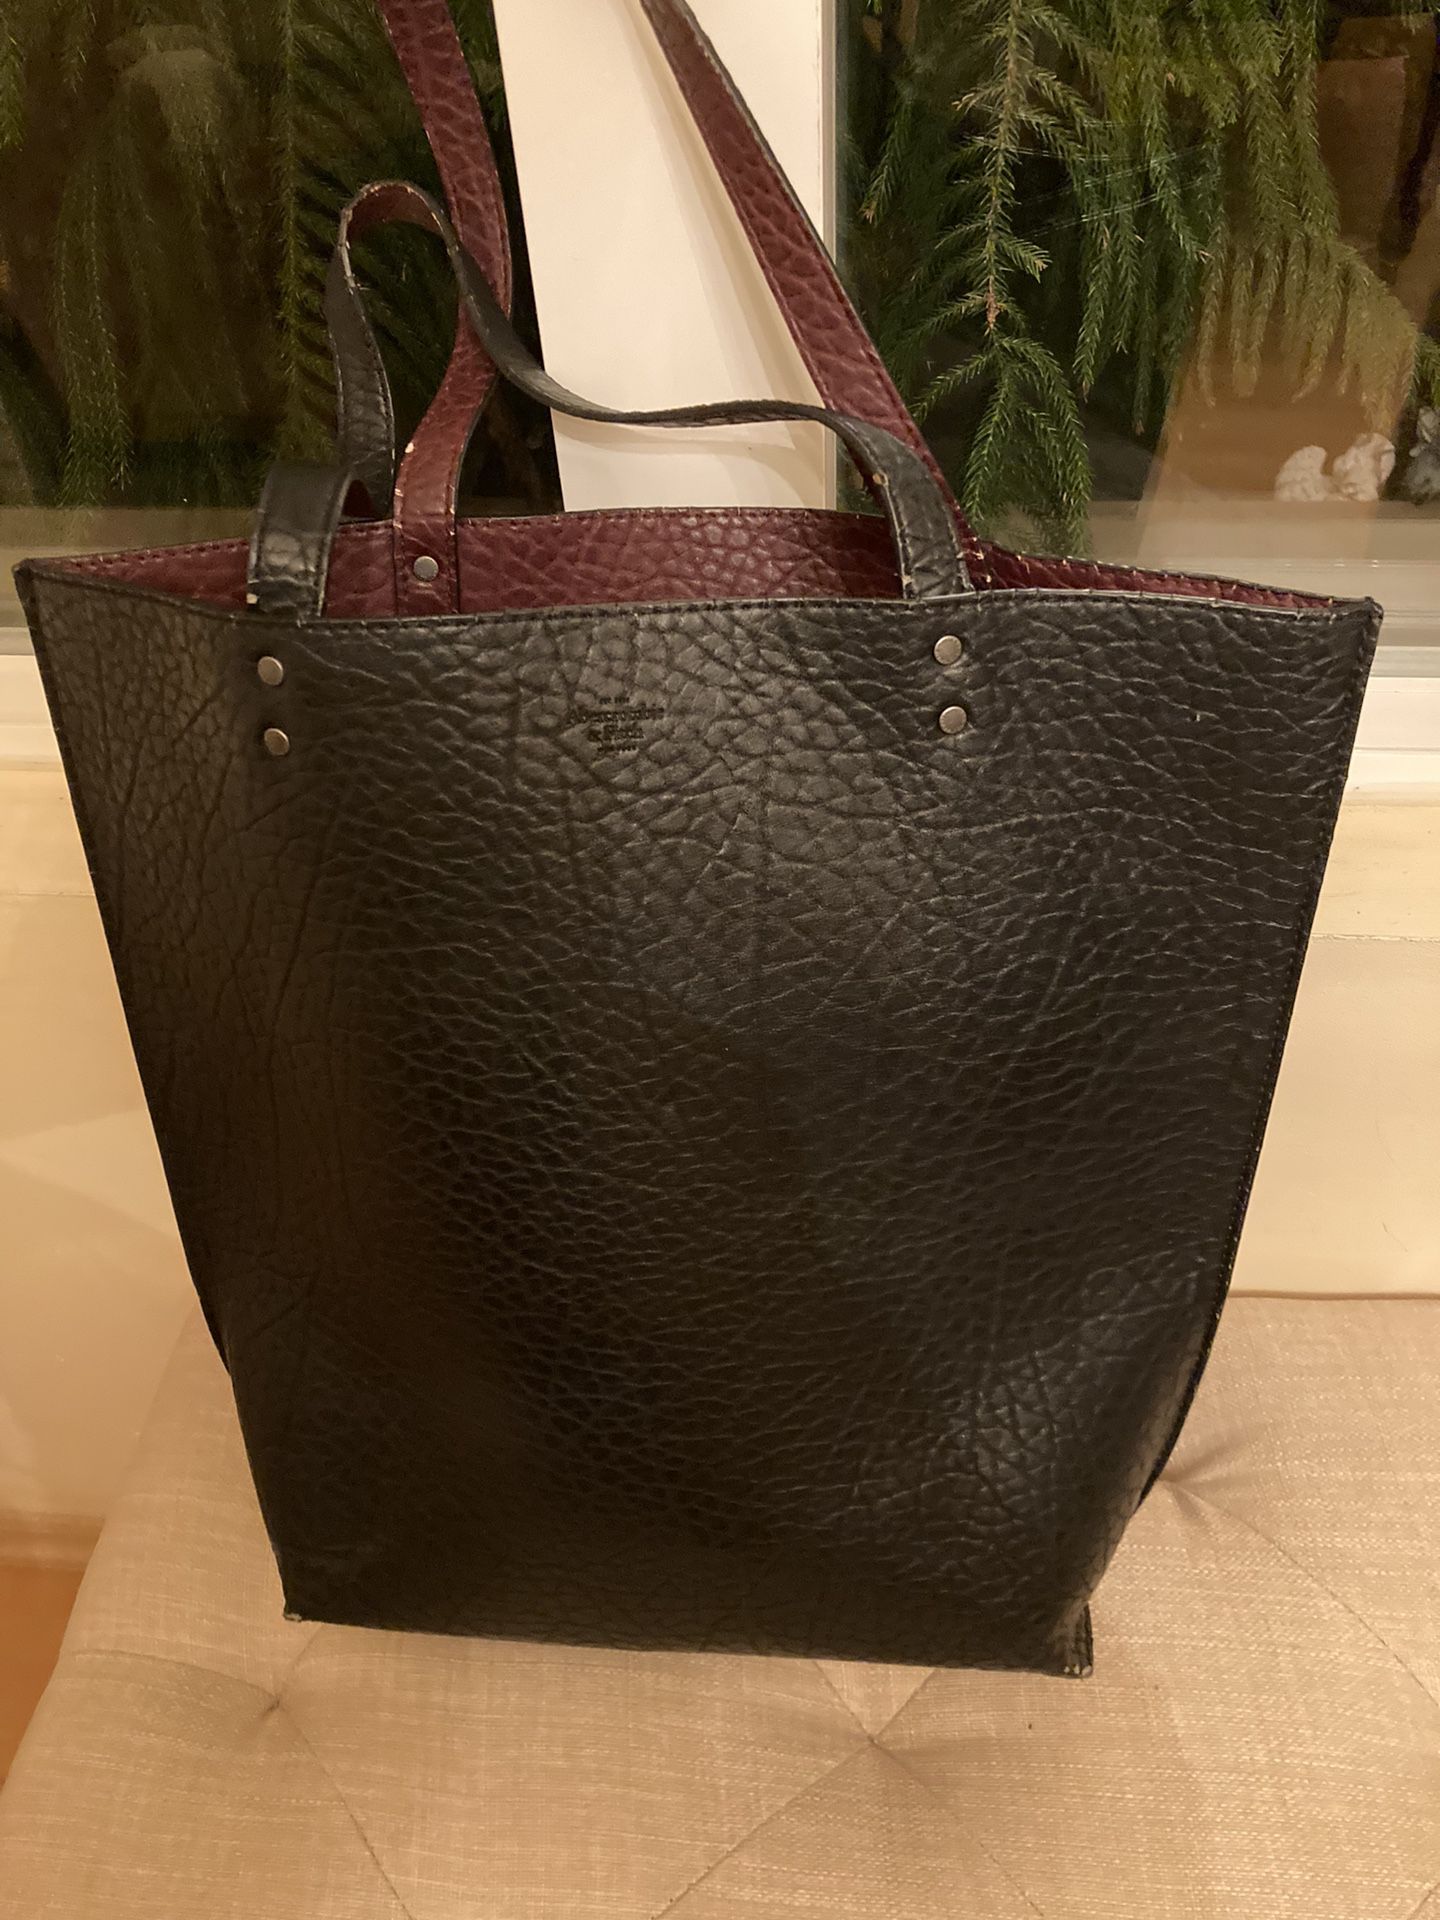 Abercrombie, leather handbag